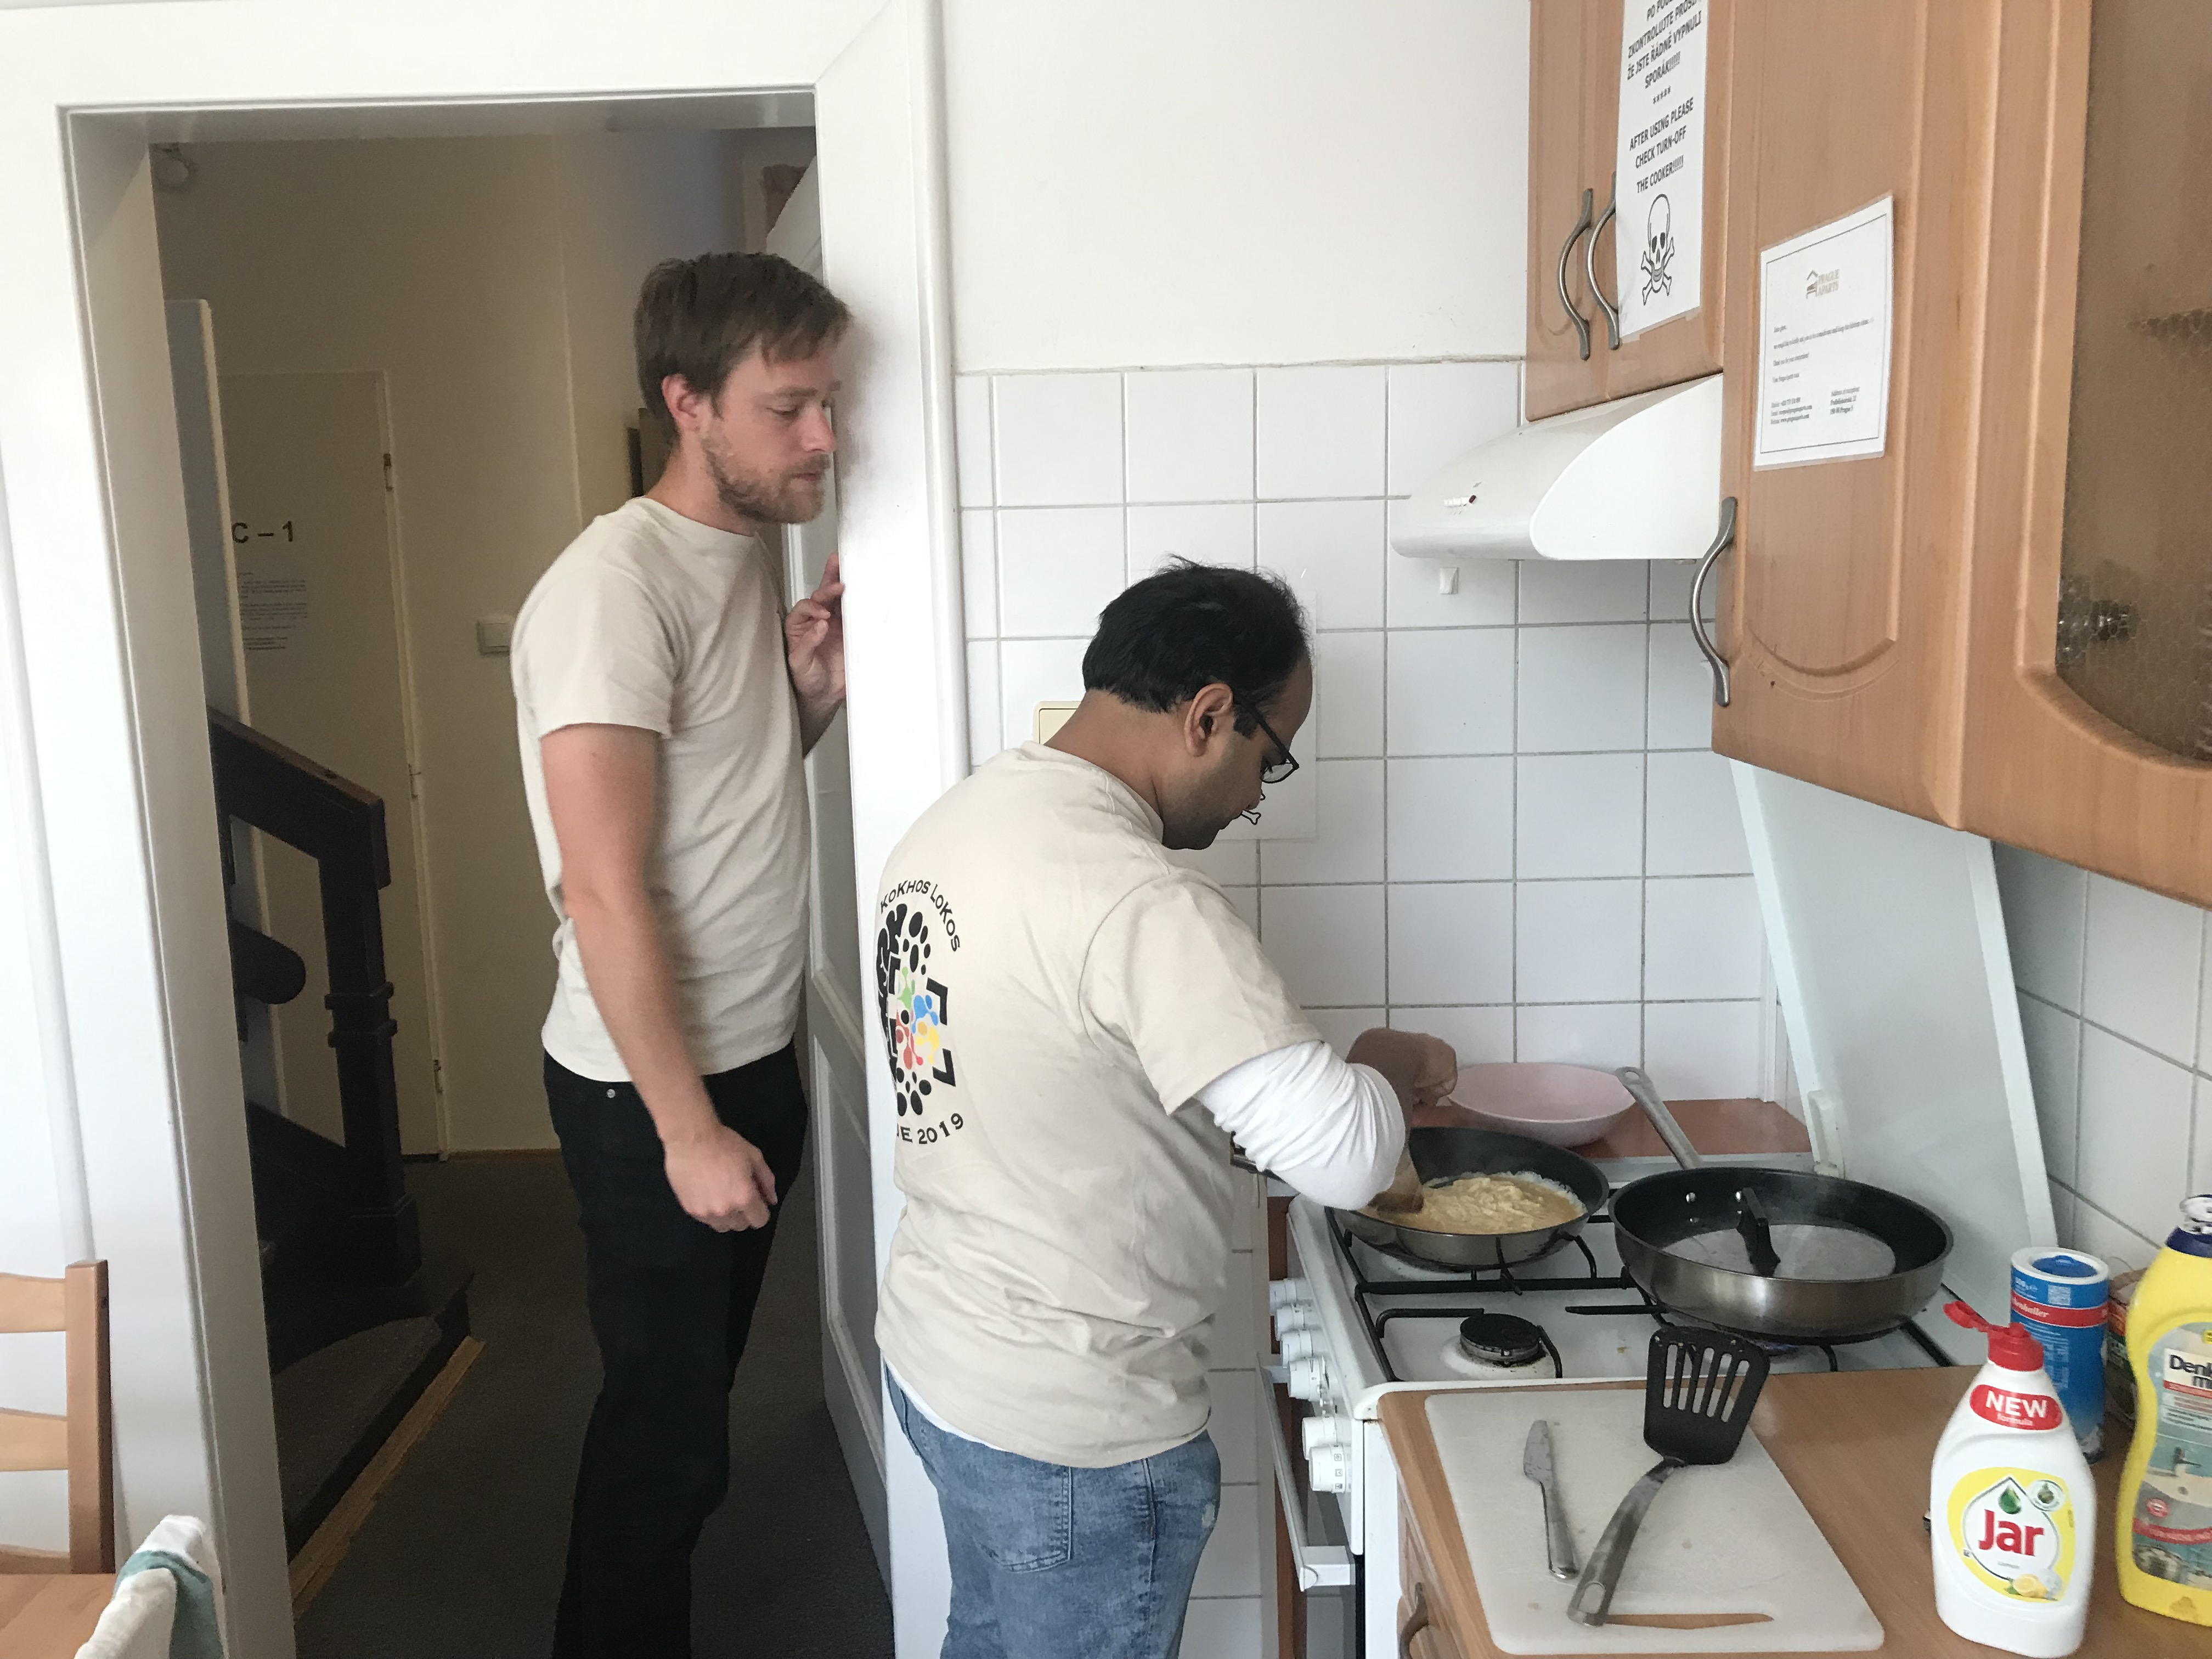 Image 7. Rasmus and Navneet are preparing a breakfast.